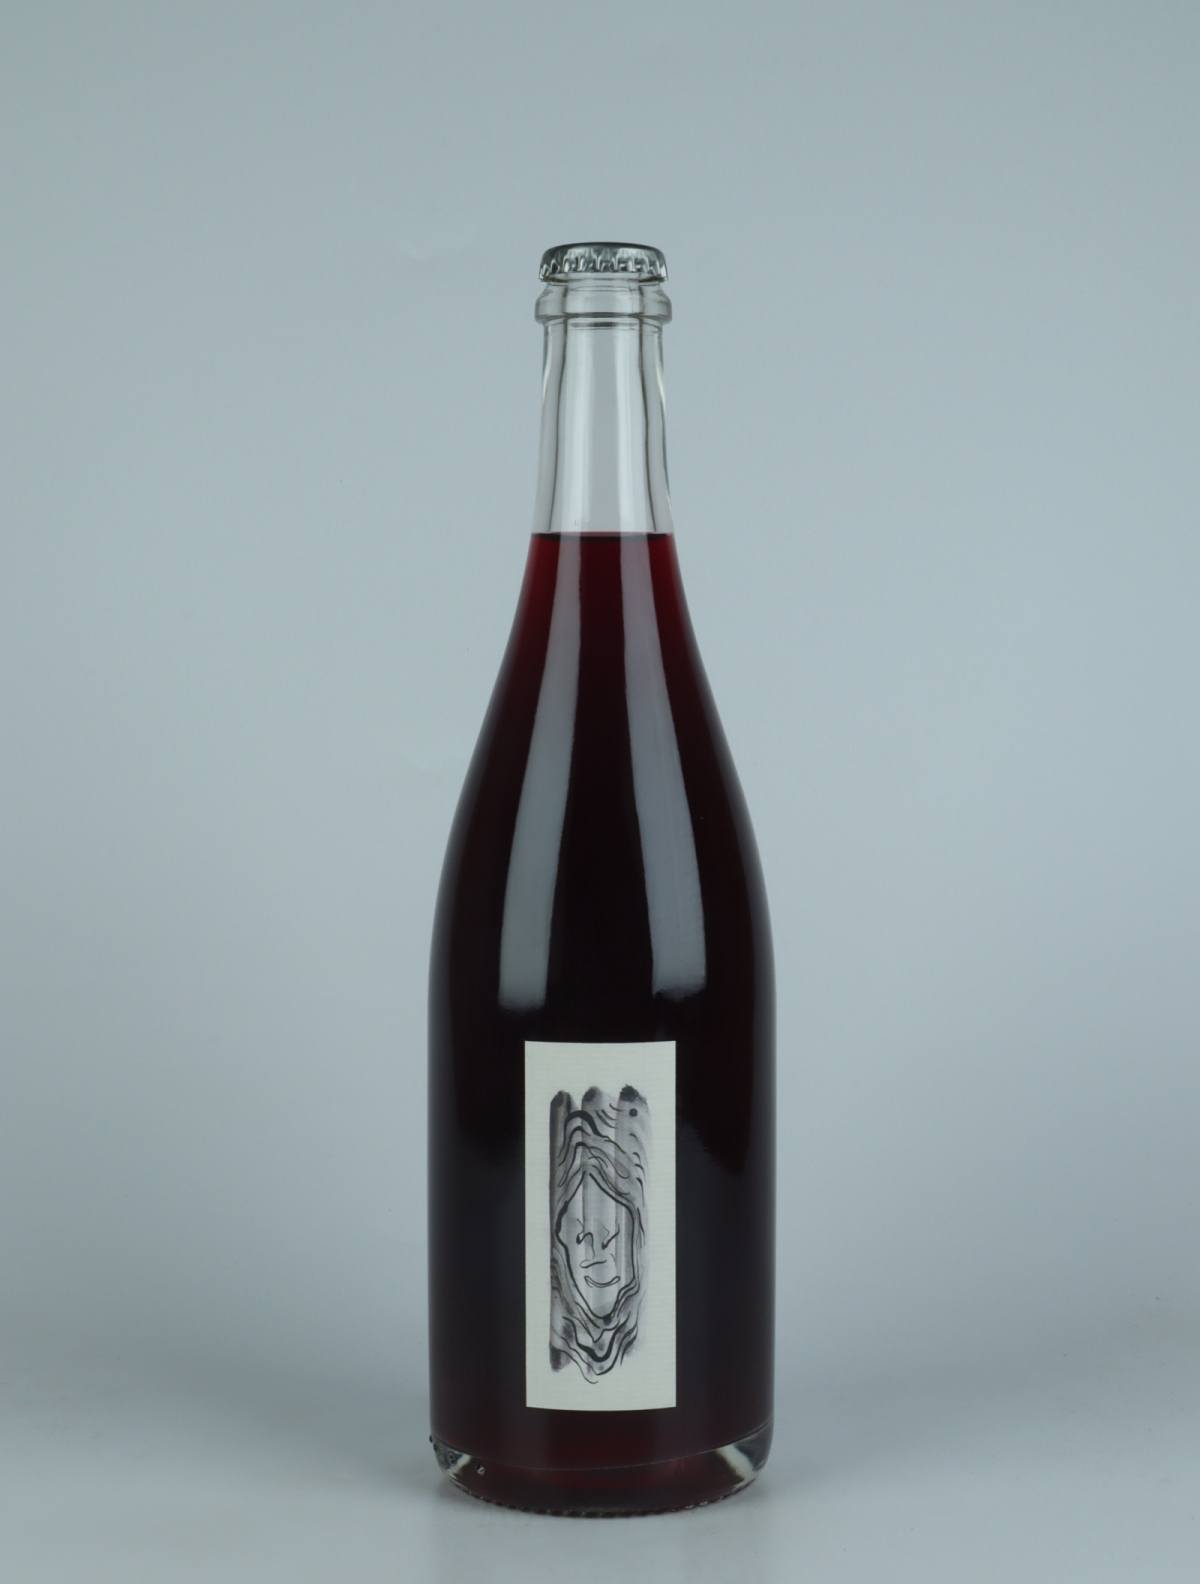 En flaske 2022 Penumbra Rødvin fra Absurde Génie des Fleurs, Languedoc i Frankrig